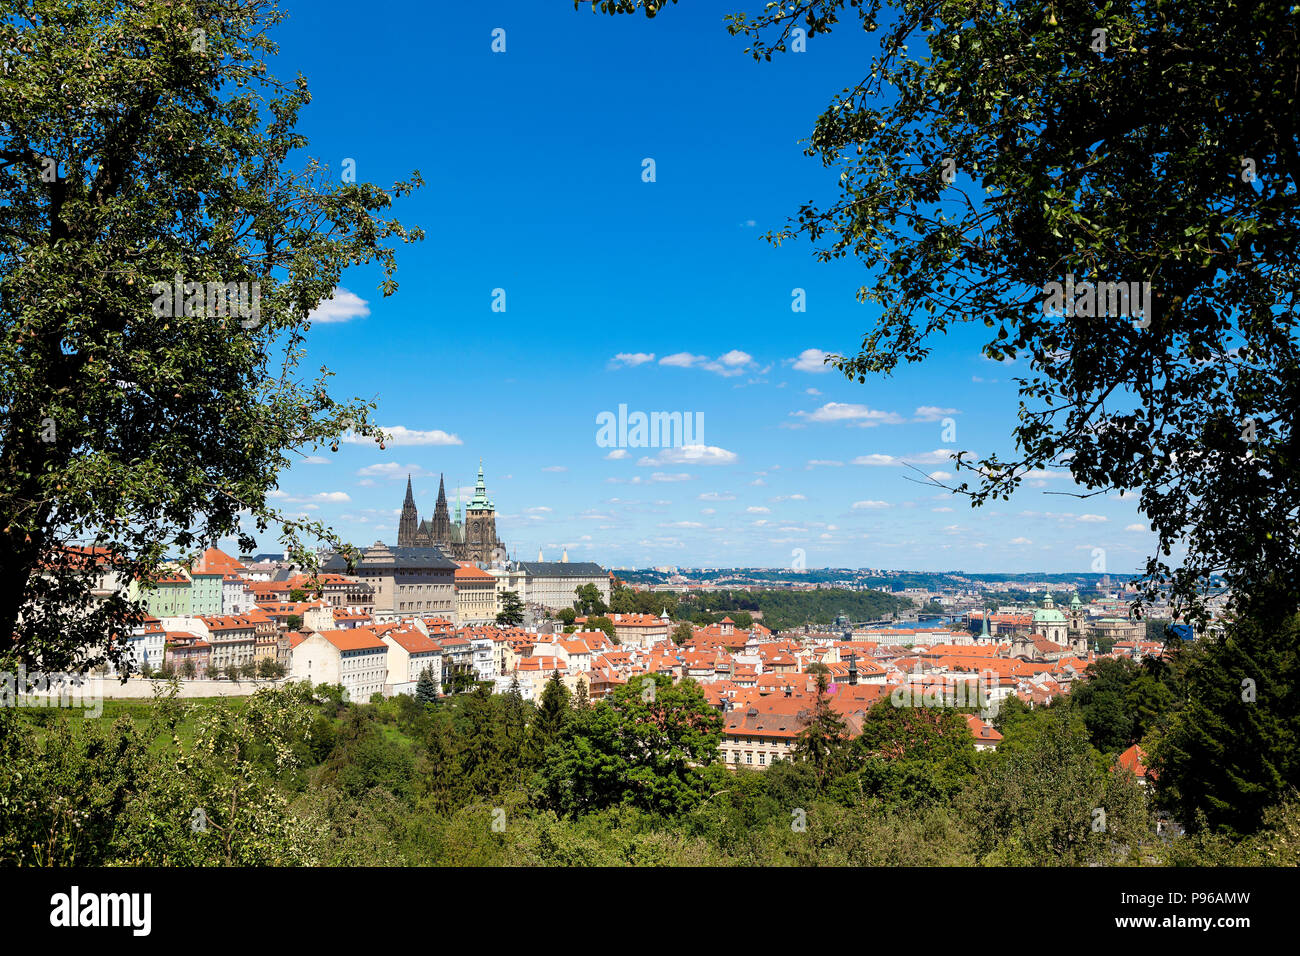 Vista panoramica di Praga da vicino il monastero di Strahov, mostrando il castello & Cathedral , il sole luminoso cielo blu. Foto Stock